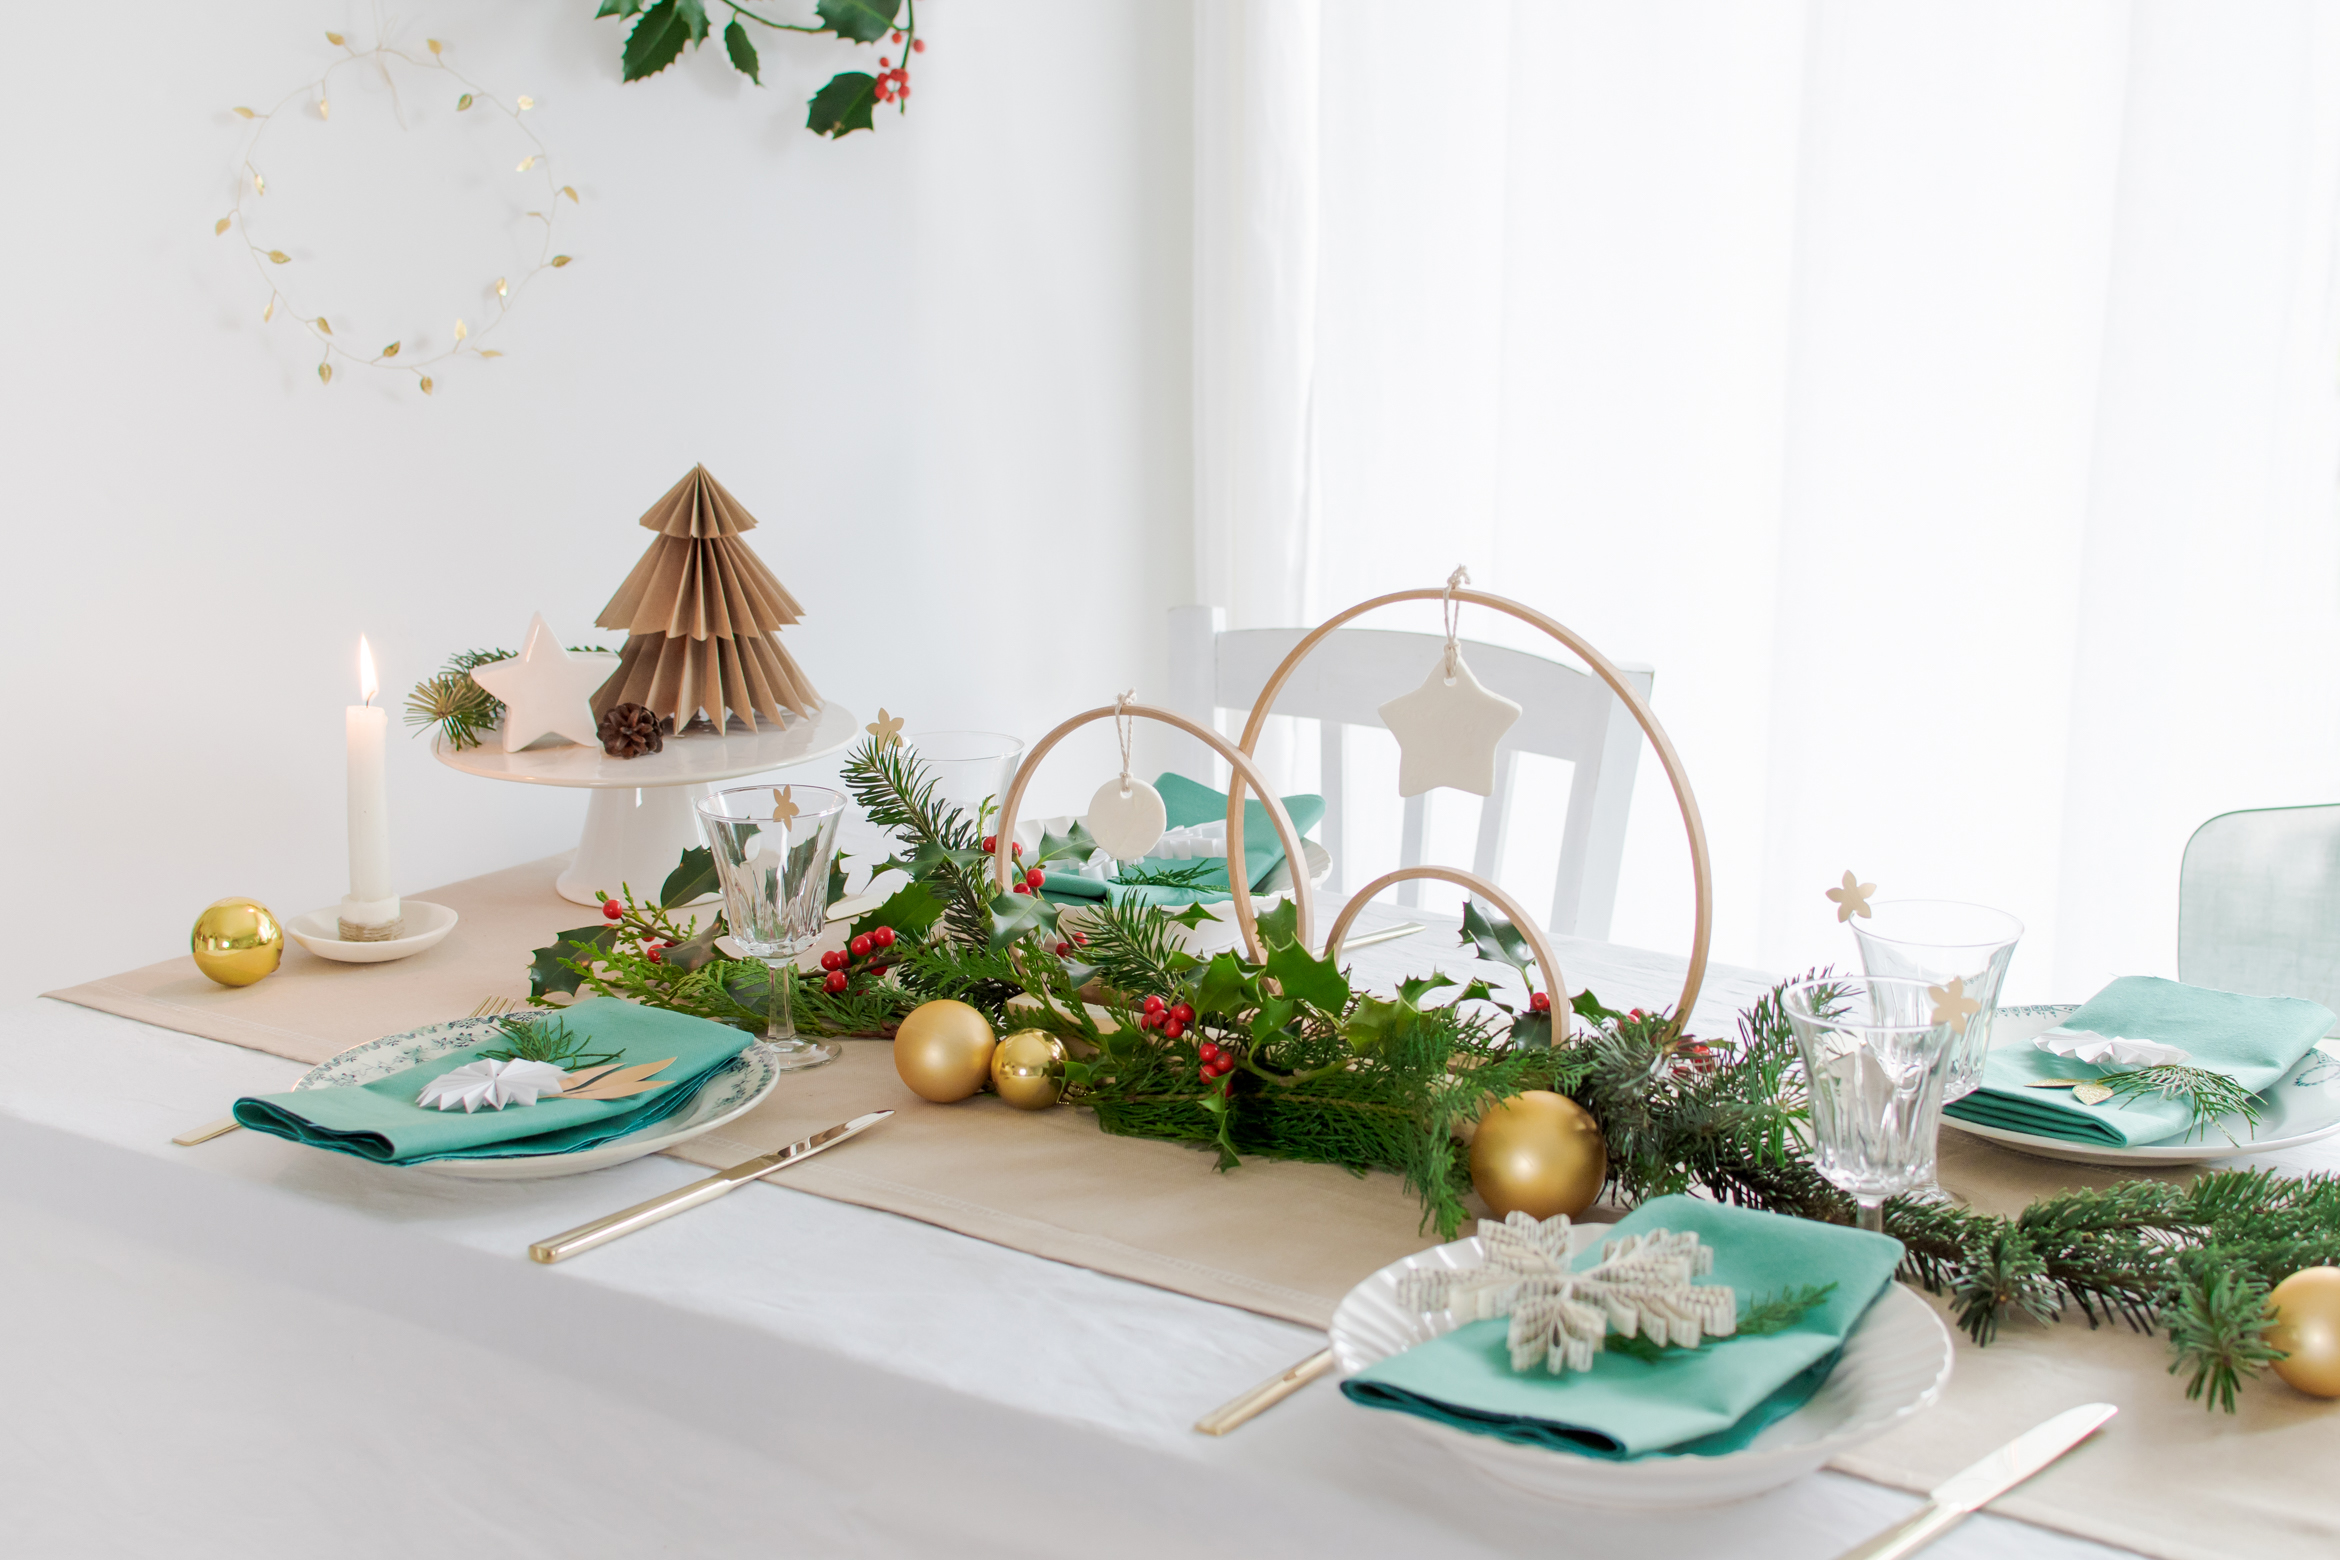 DIY Centre de table Noël : une idée créative, simple et économique